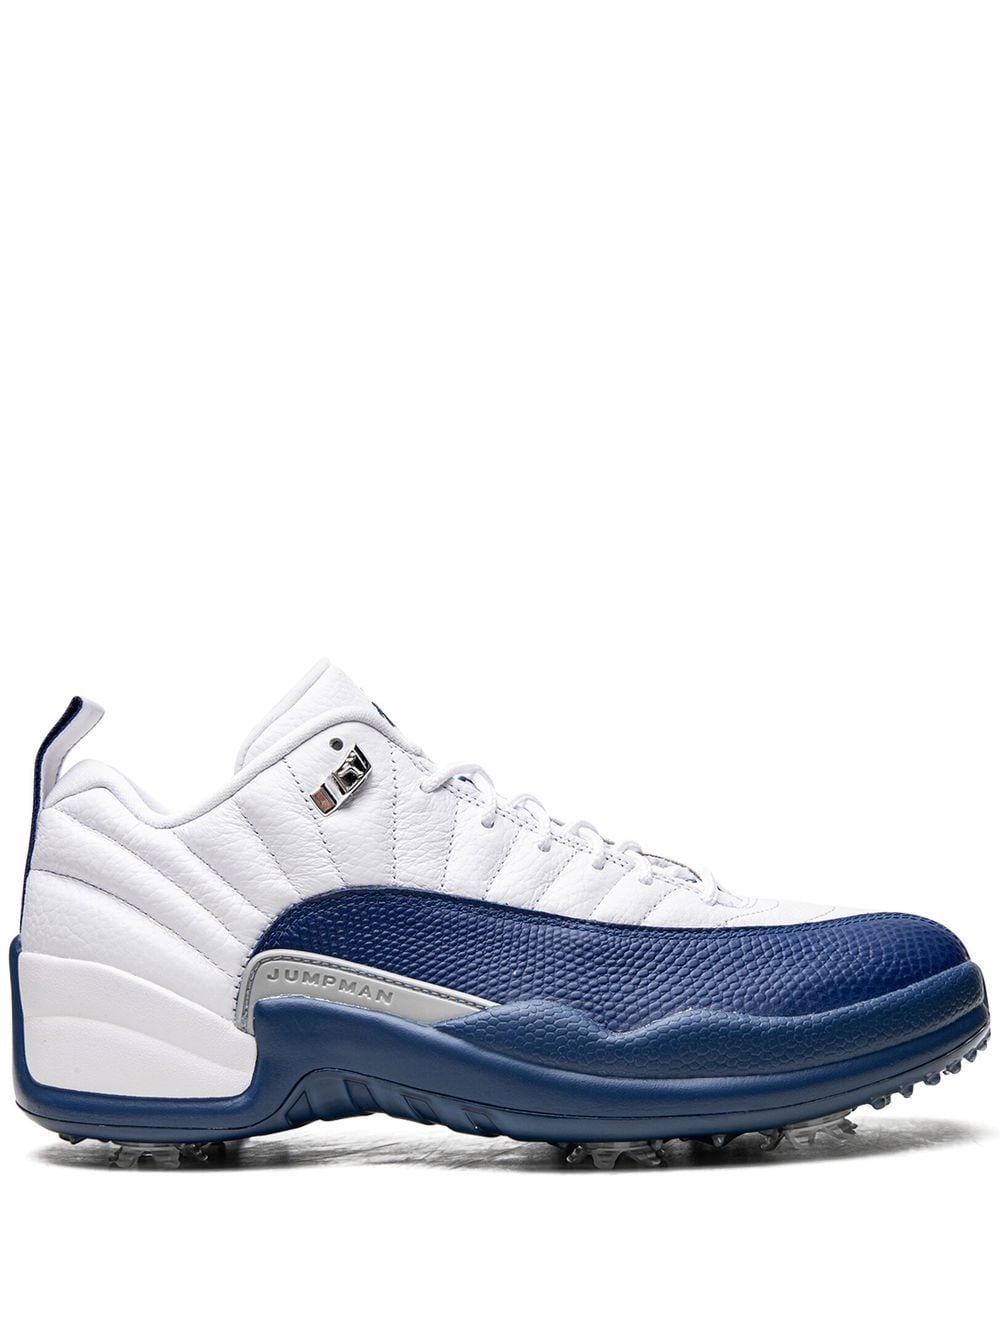 Jordan Air Jordan 12 Low Golf "French Blue" sneakers - White